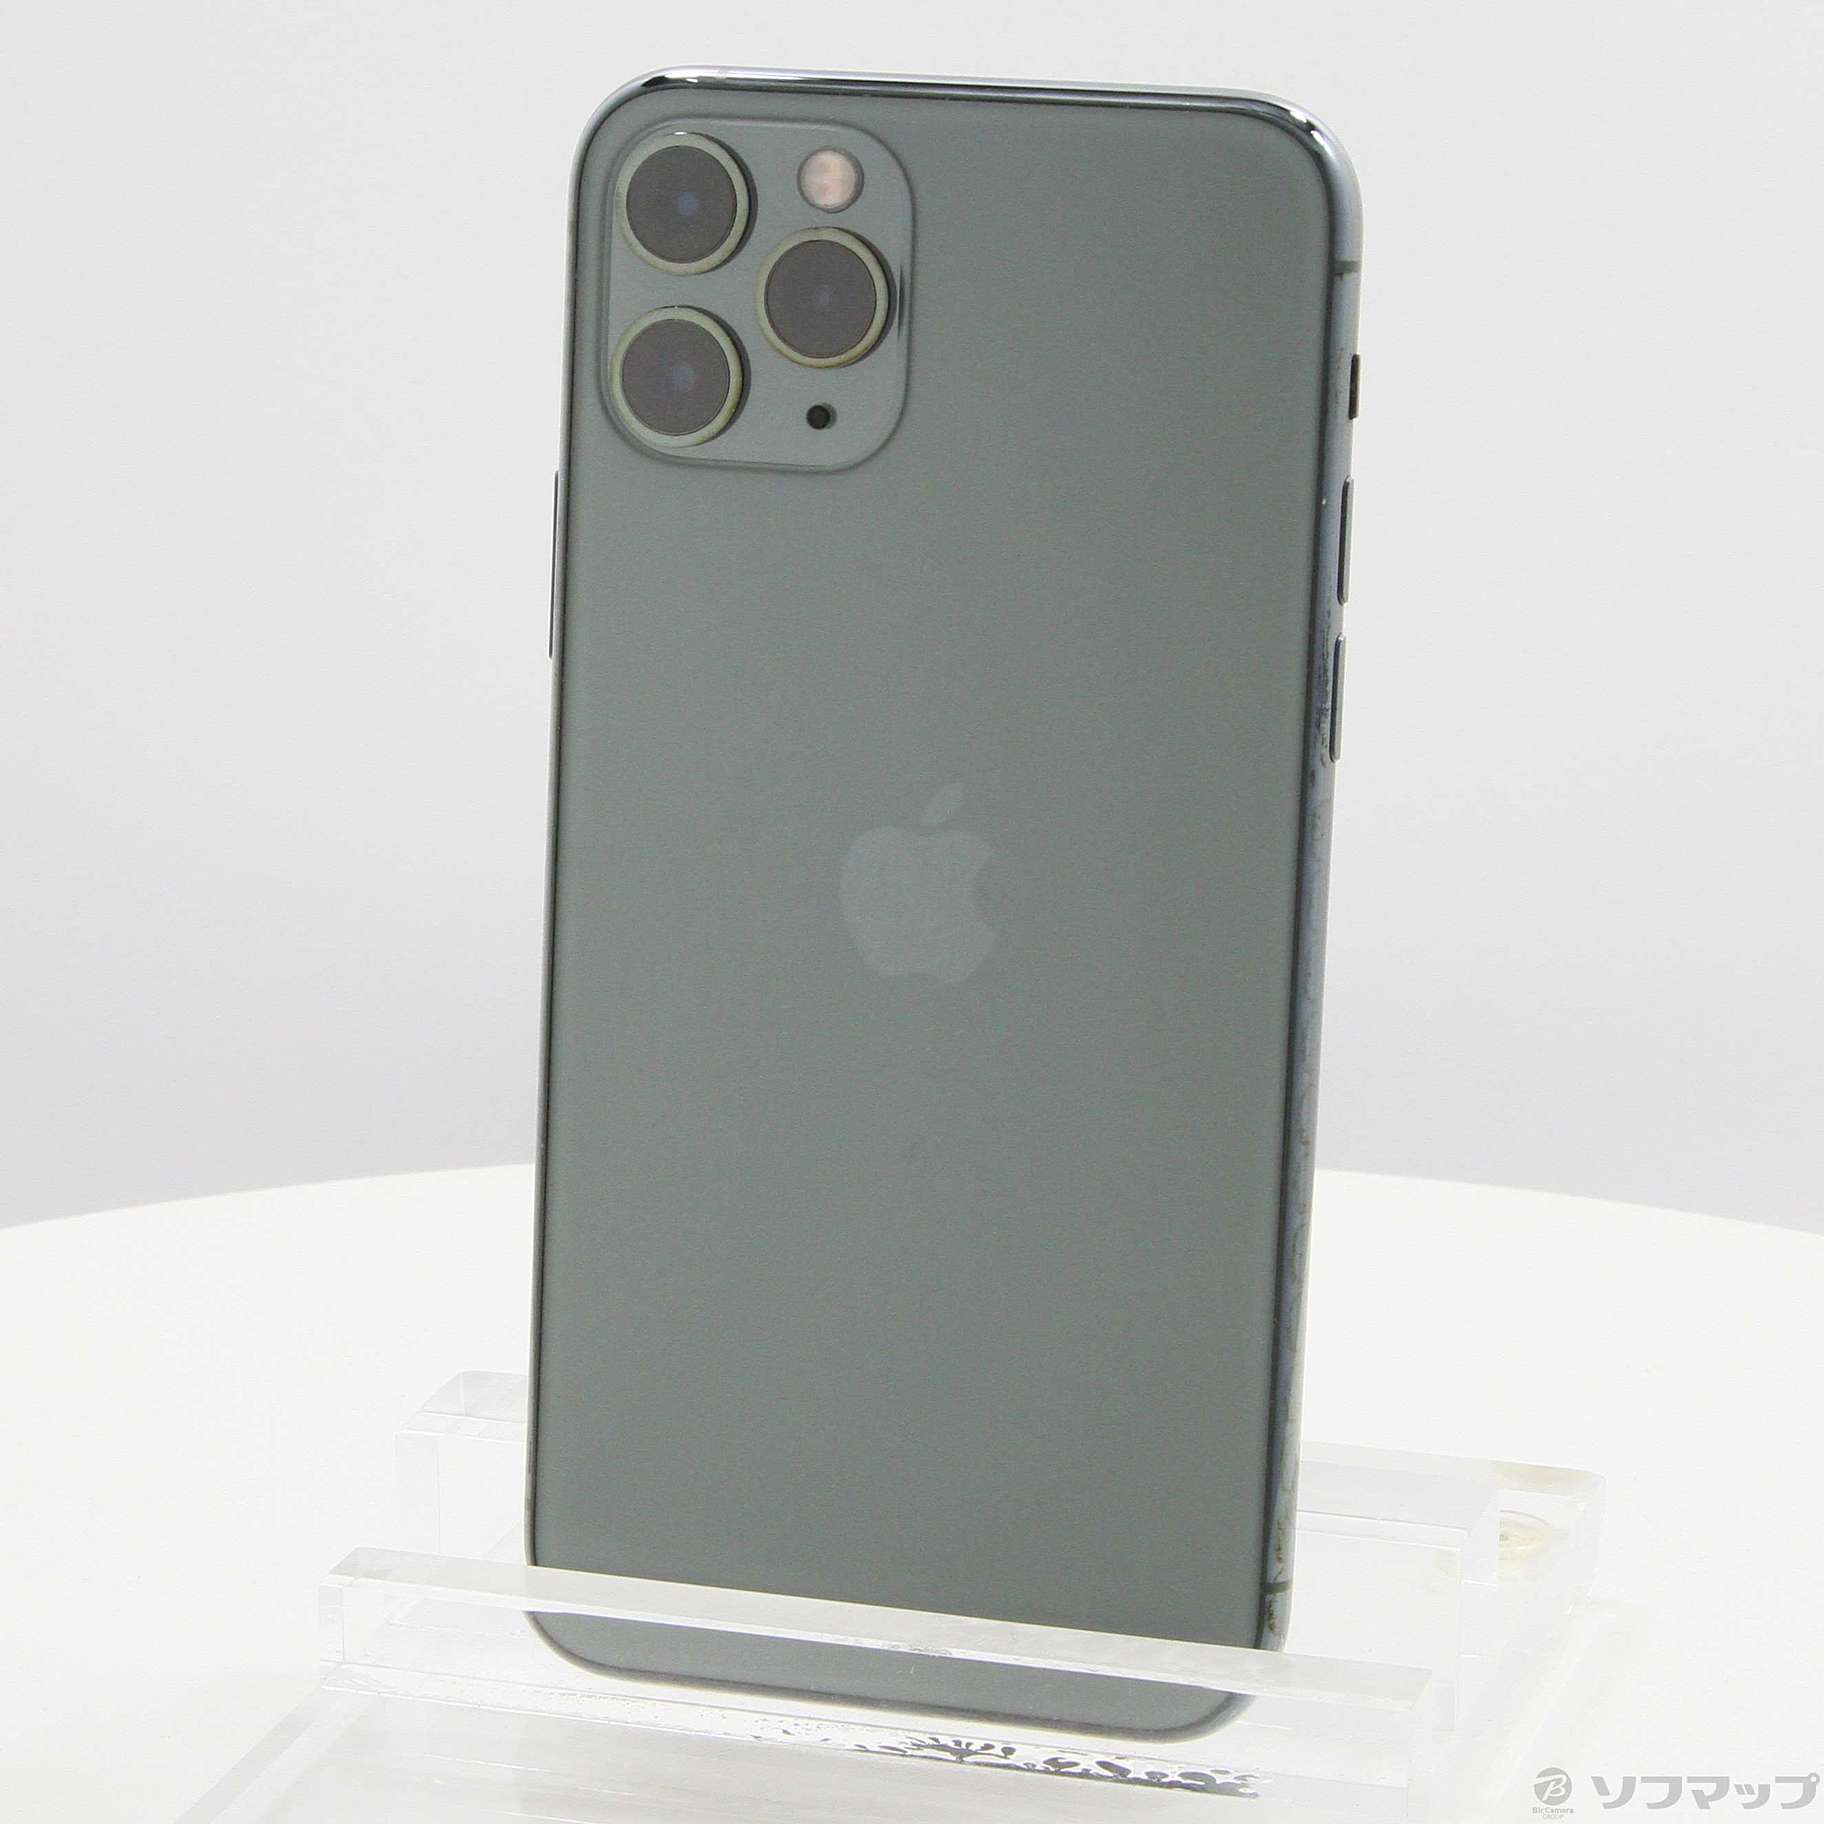 ファッション通販 Apple アップル iPhone11 Pro 256GB ミッドナイトグリーン MWCC2J A SIMフリー 